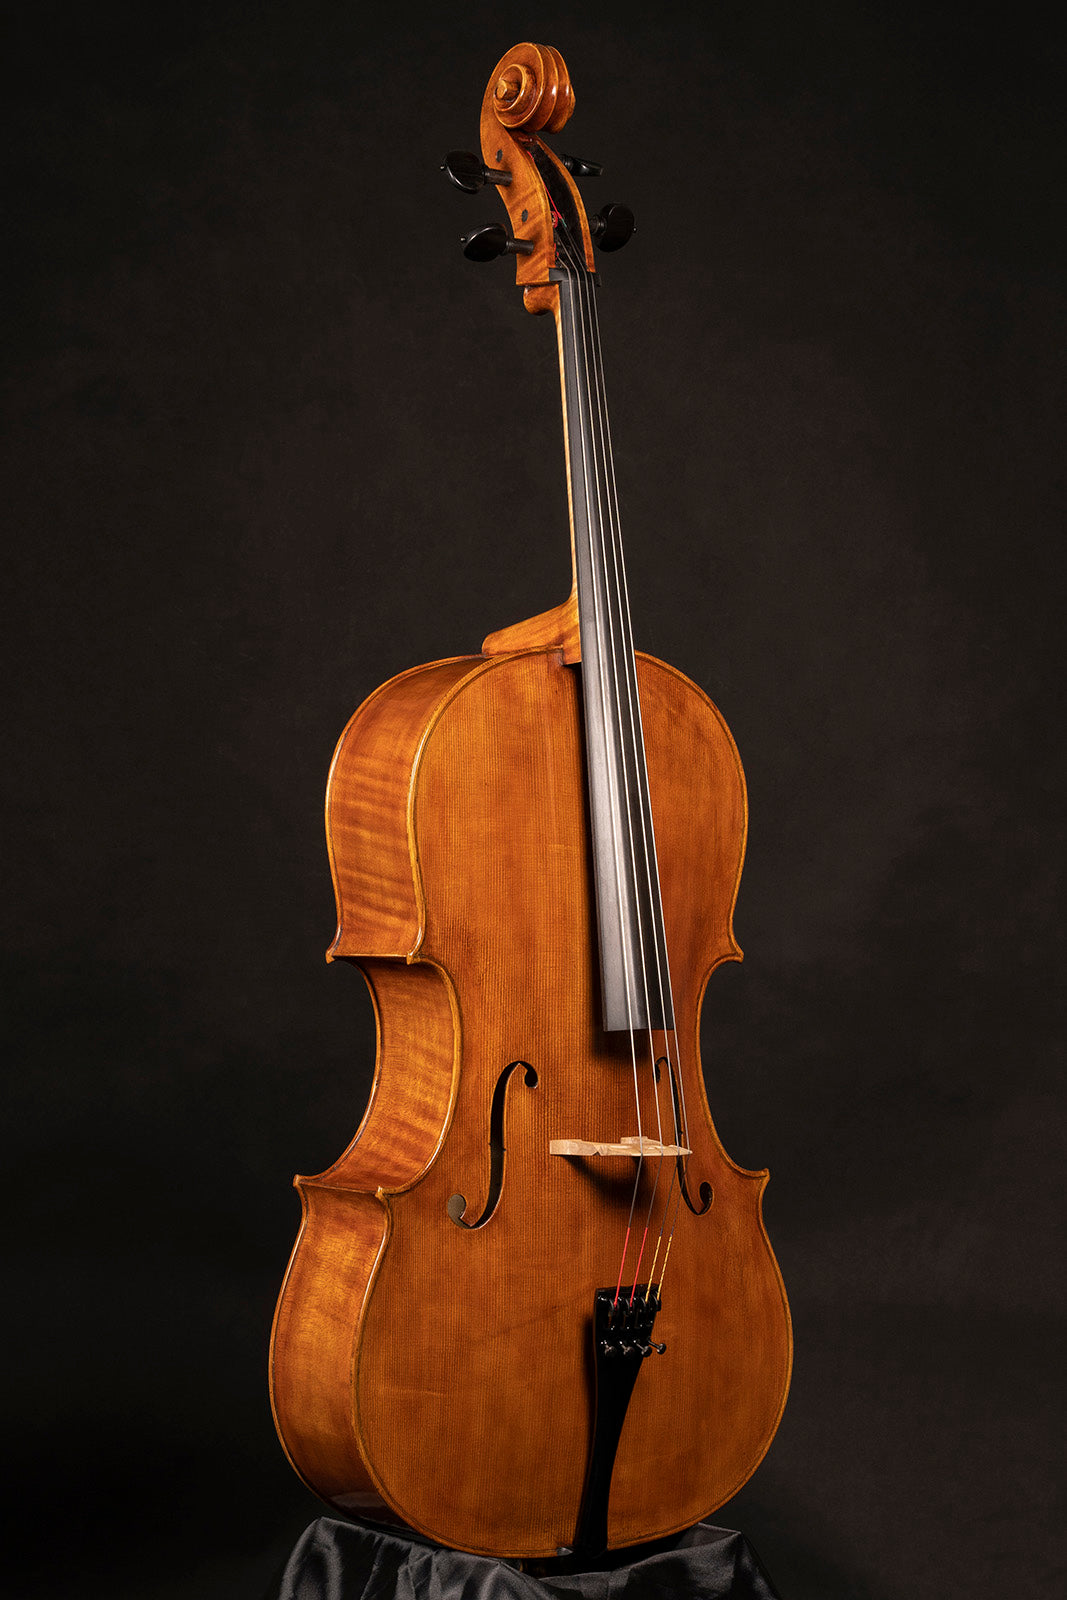 Vettori Paolo Cello Mod. Pietro Guarneri Da Mantova "Monna Lisa" 2021